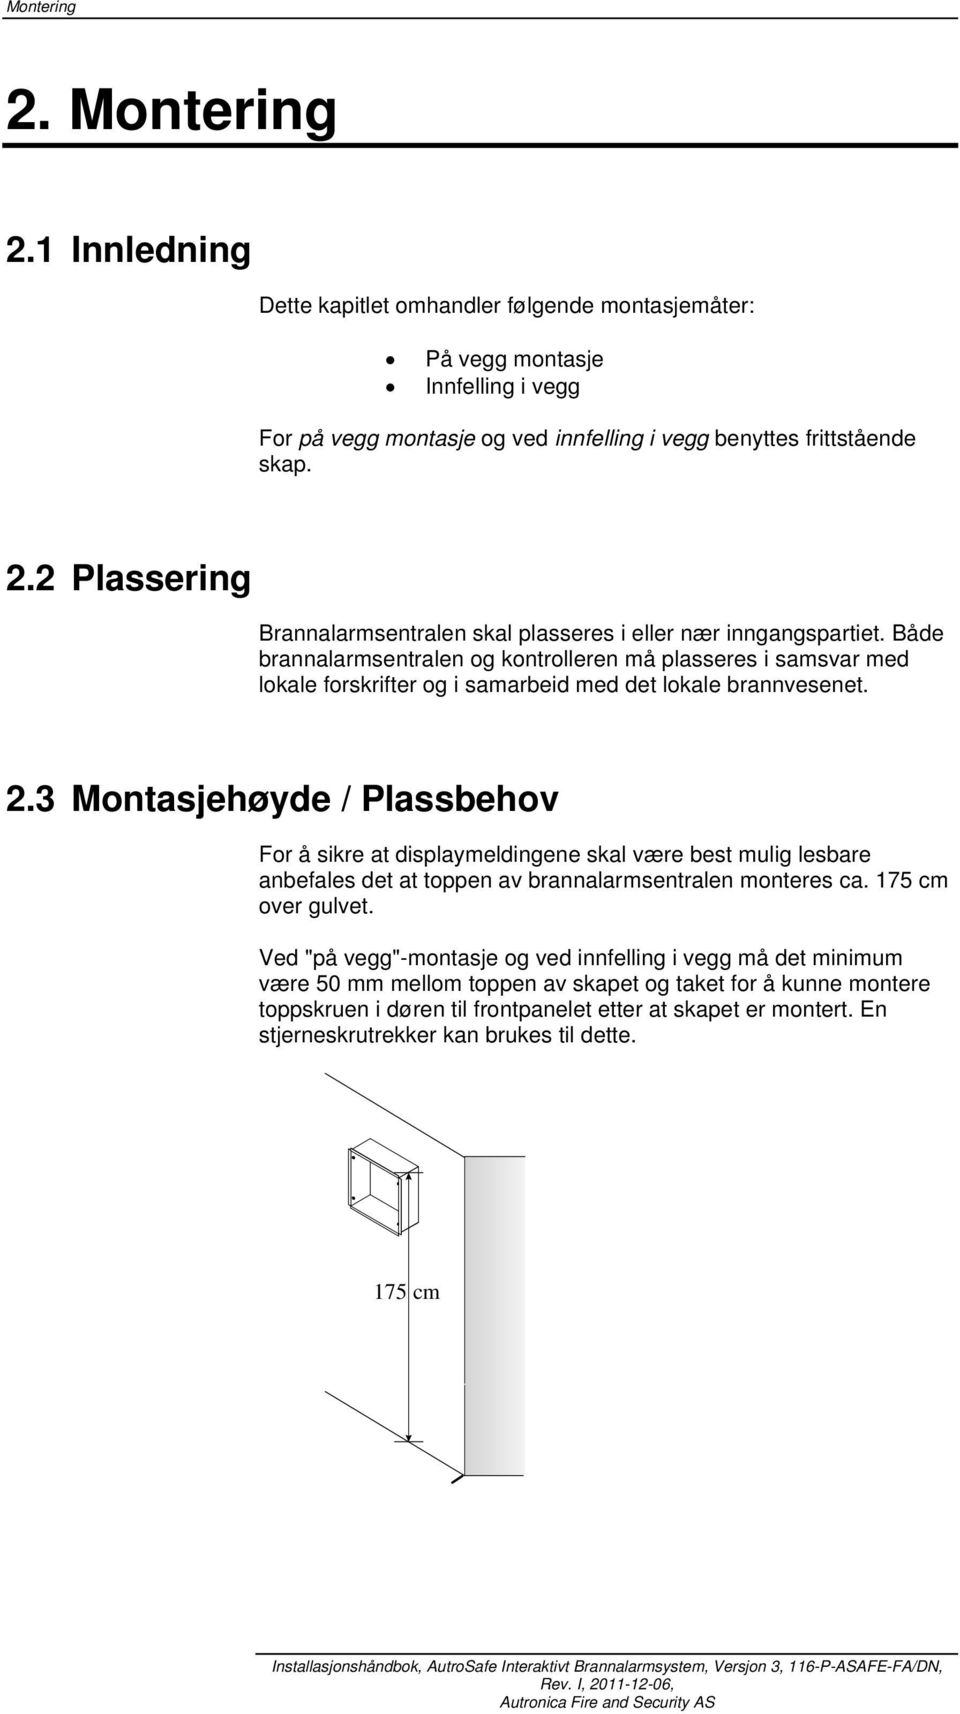 3 Montasjehøyde / Plassbehov For å sikre at displaymeldingene skal være best mulig lesbare anbefales det at toppen av brannalarmsentralen monteres ca. 75 cm over gulvet.